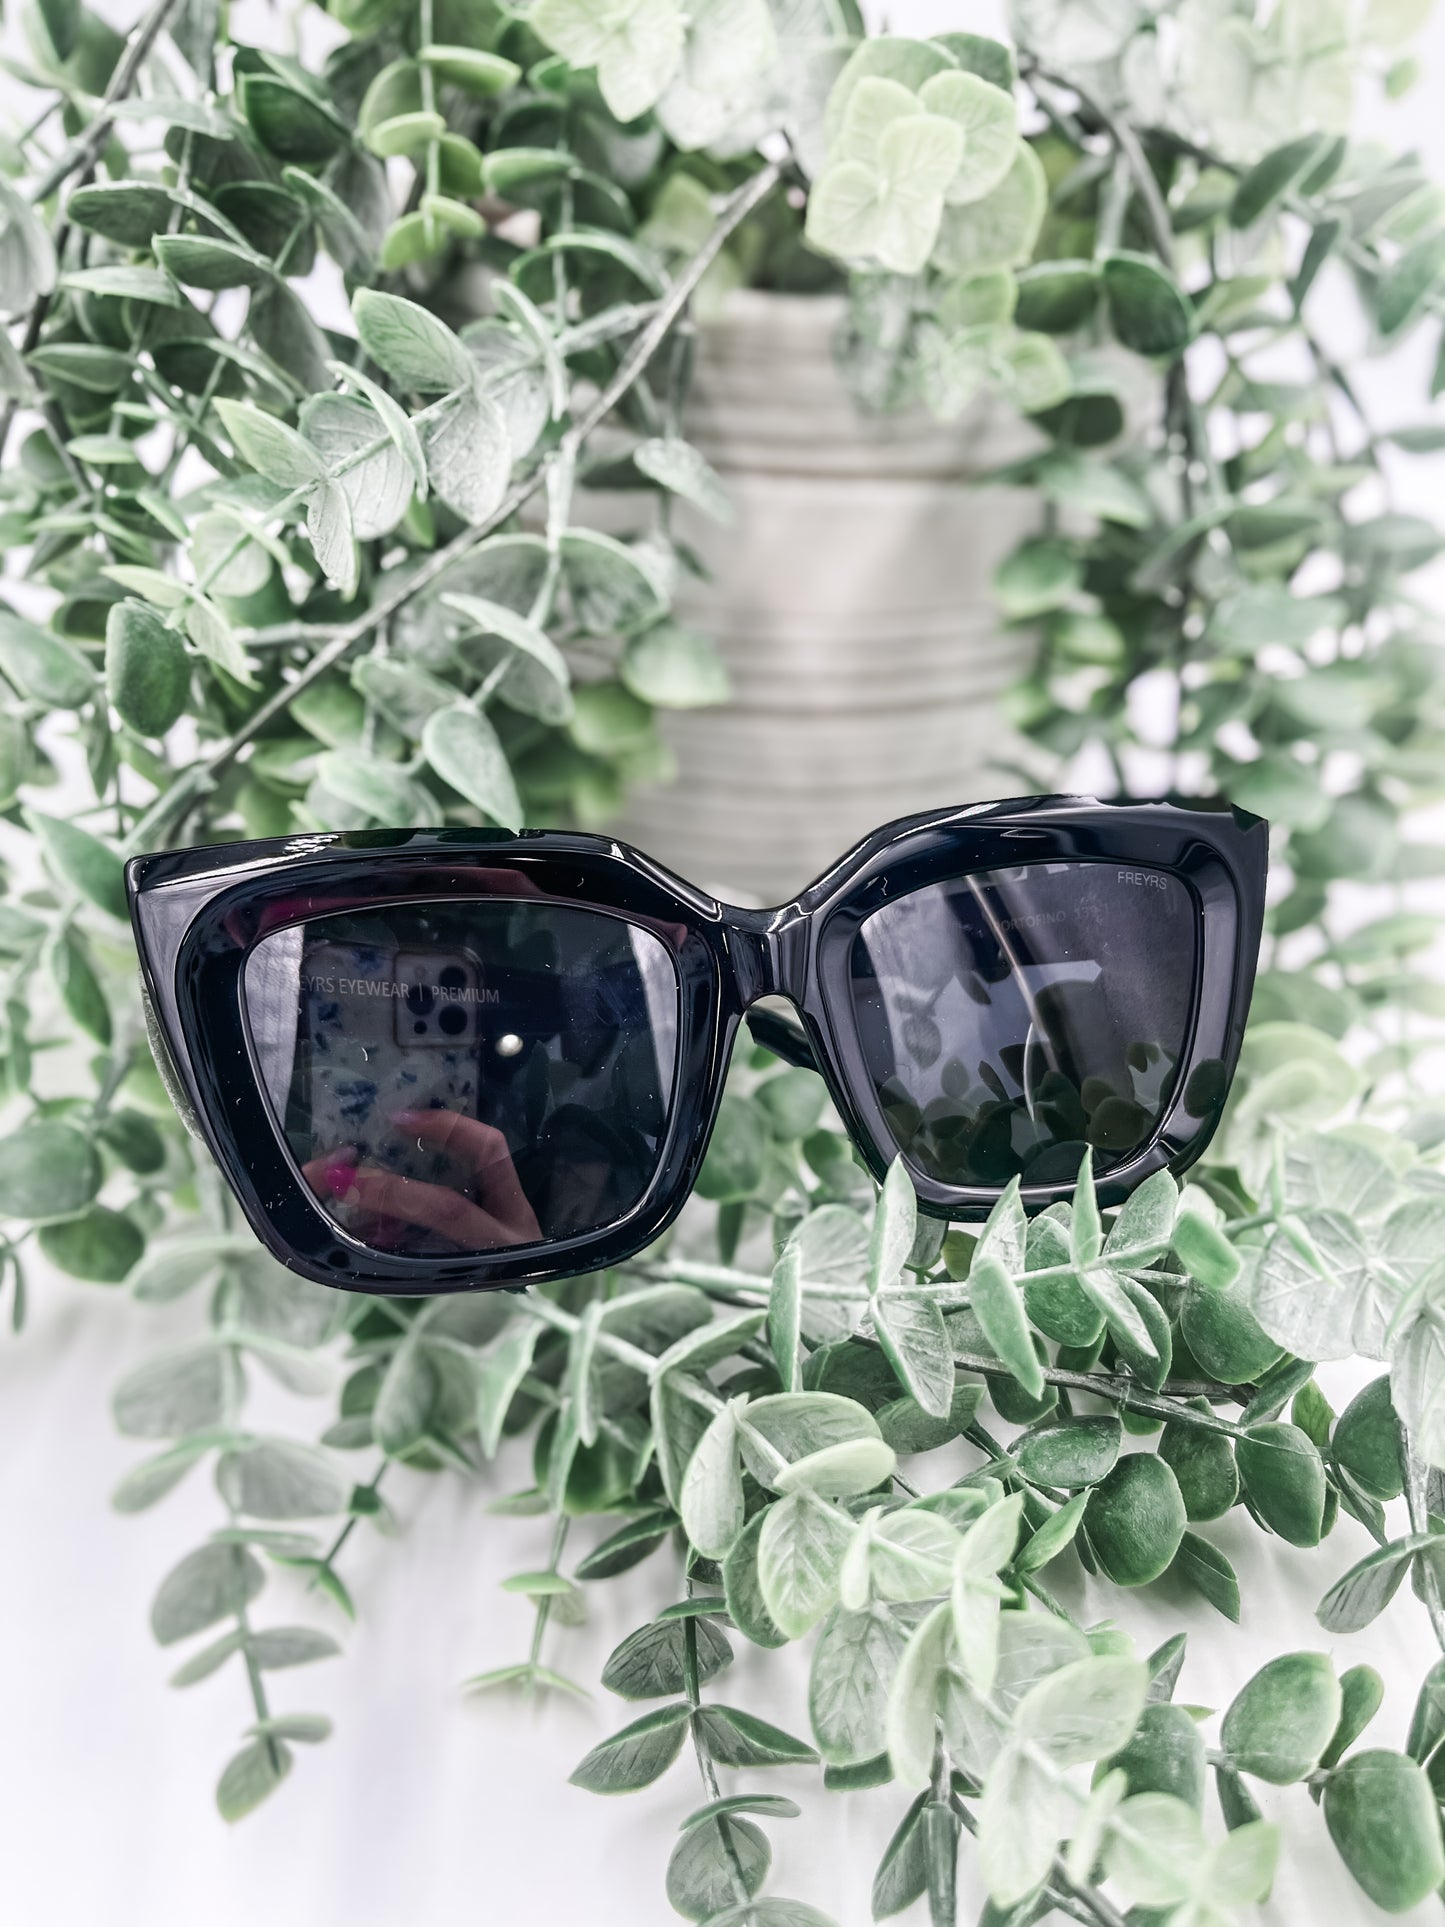 Portofino Black Sunglasses